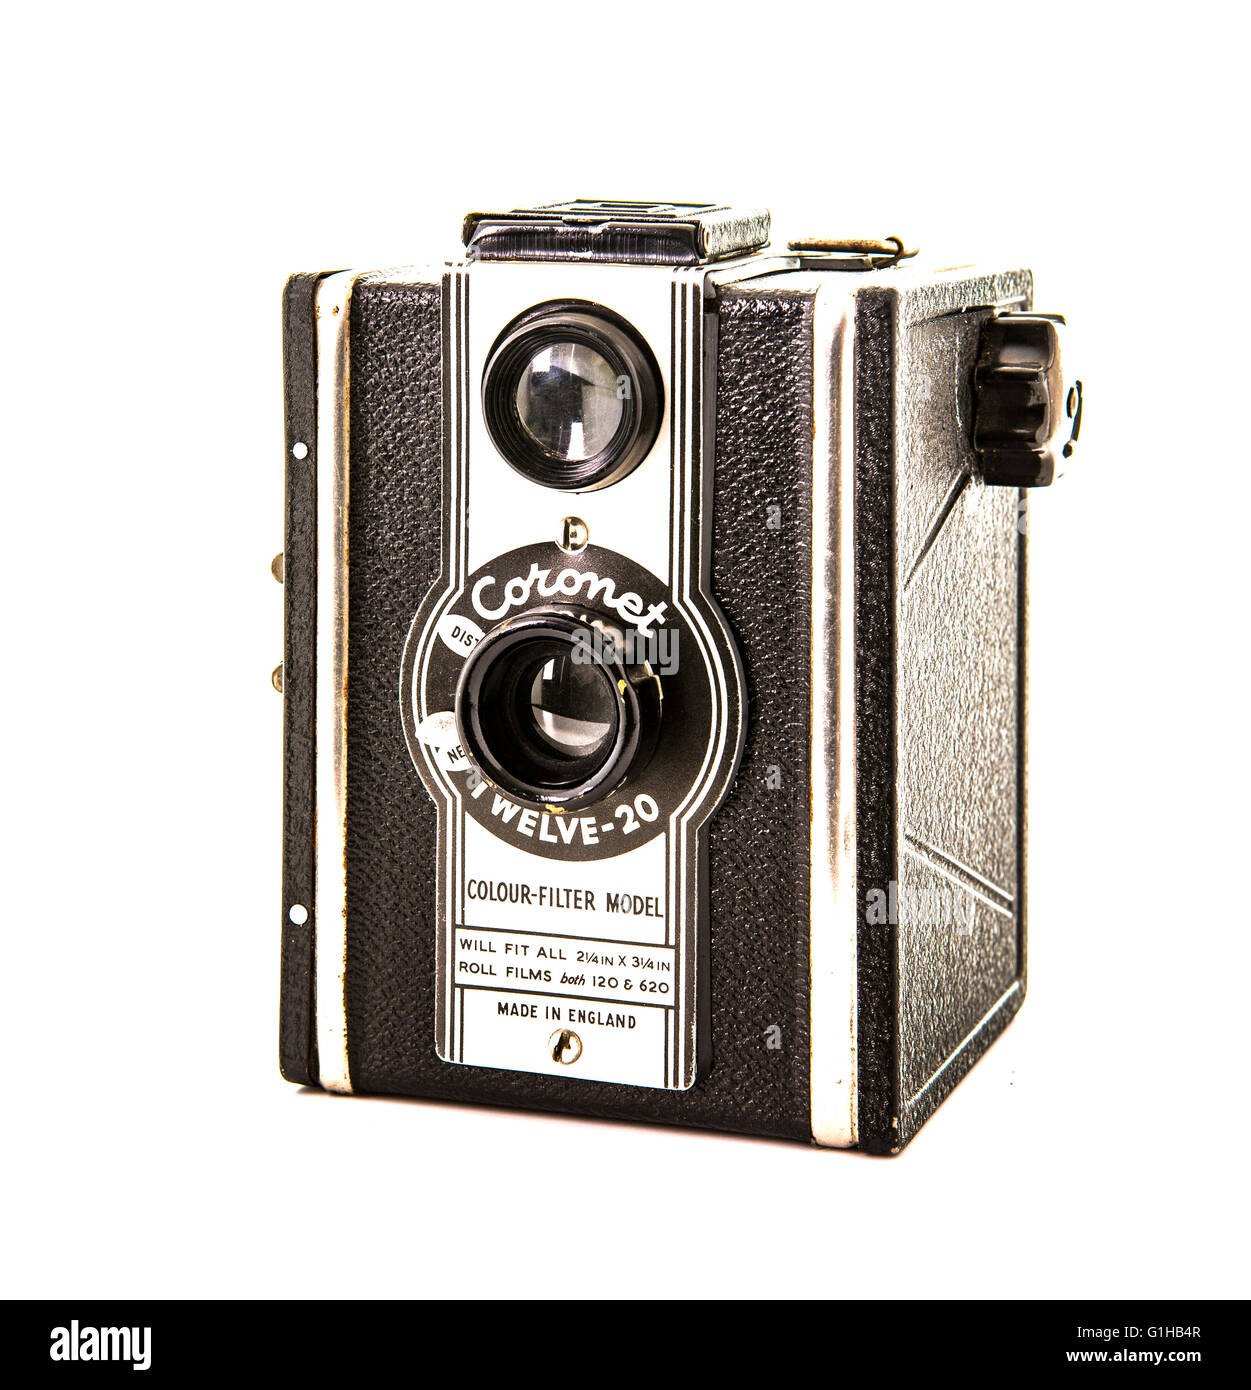 Coronet's 12-20-Box-Kamera aus dem Jahr 1950 auf weißem Hintergrund Stockfoto